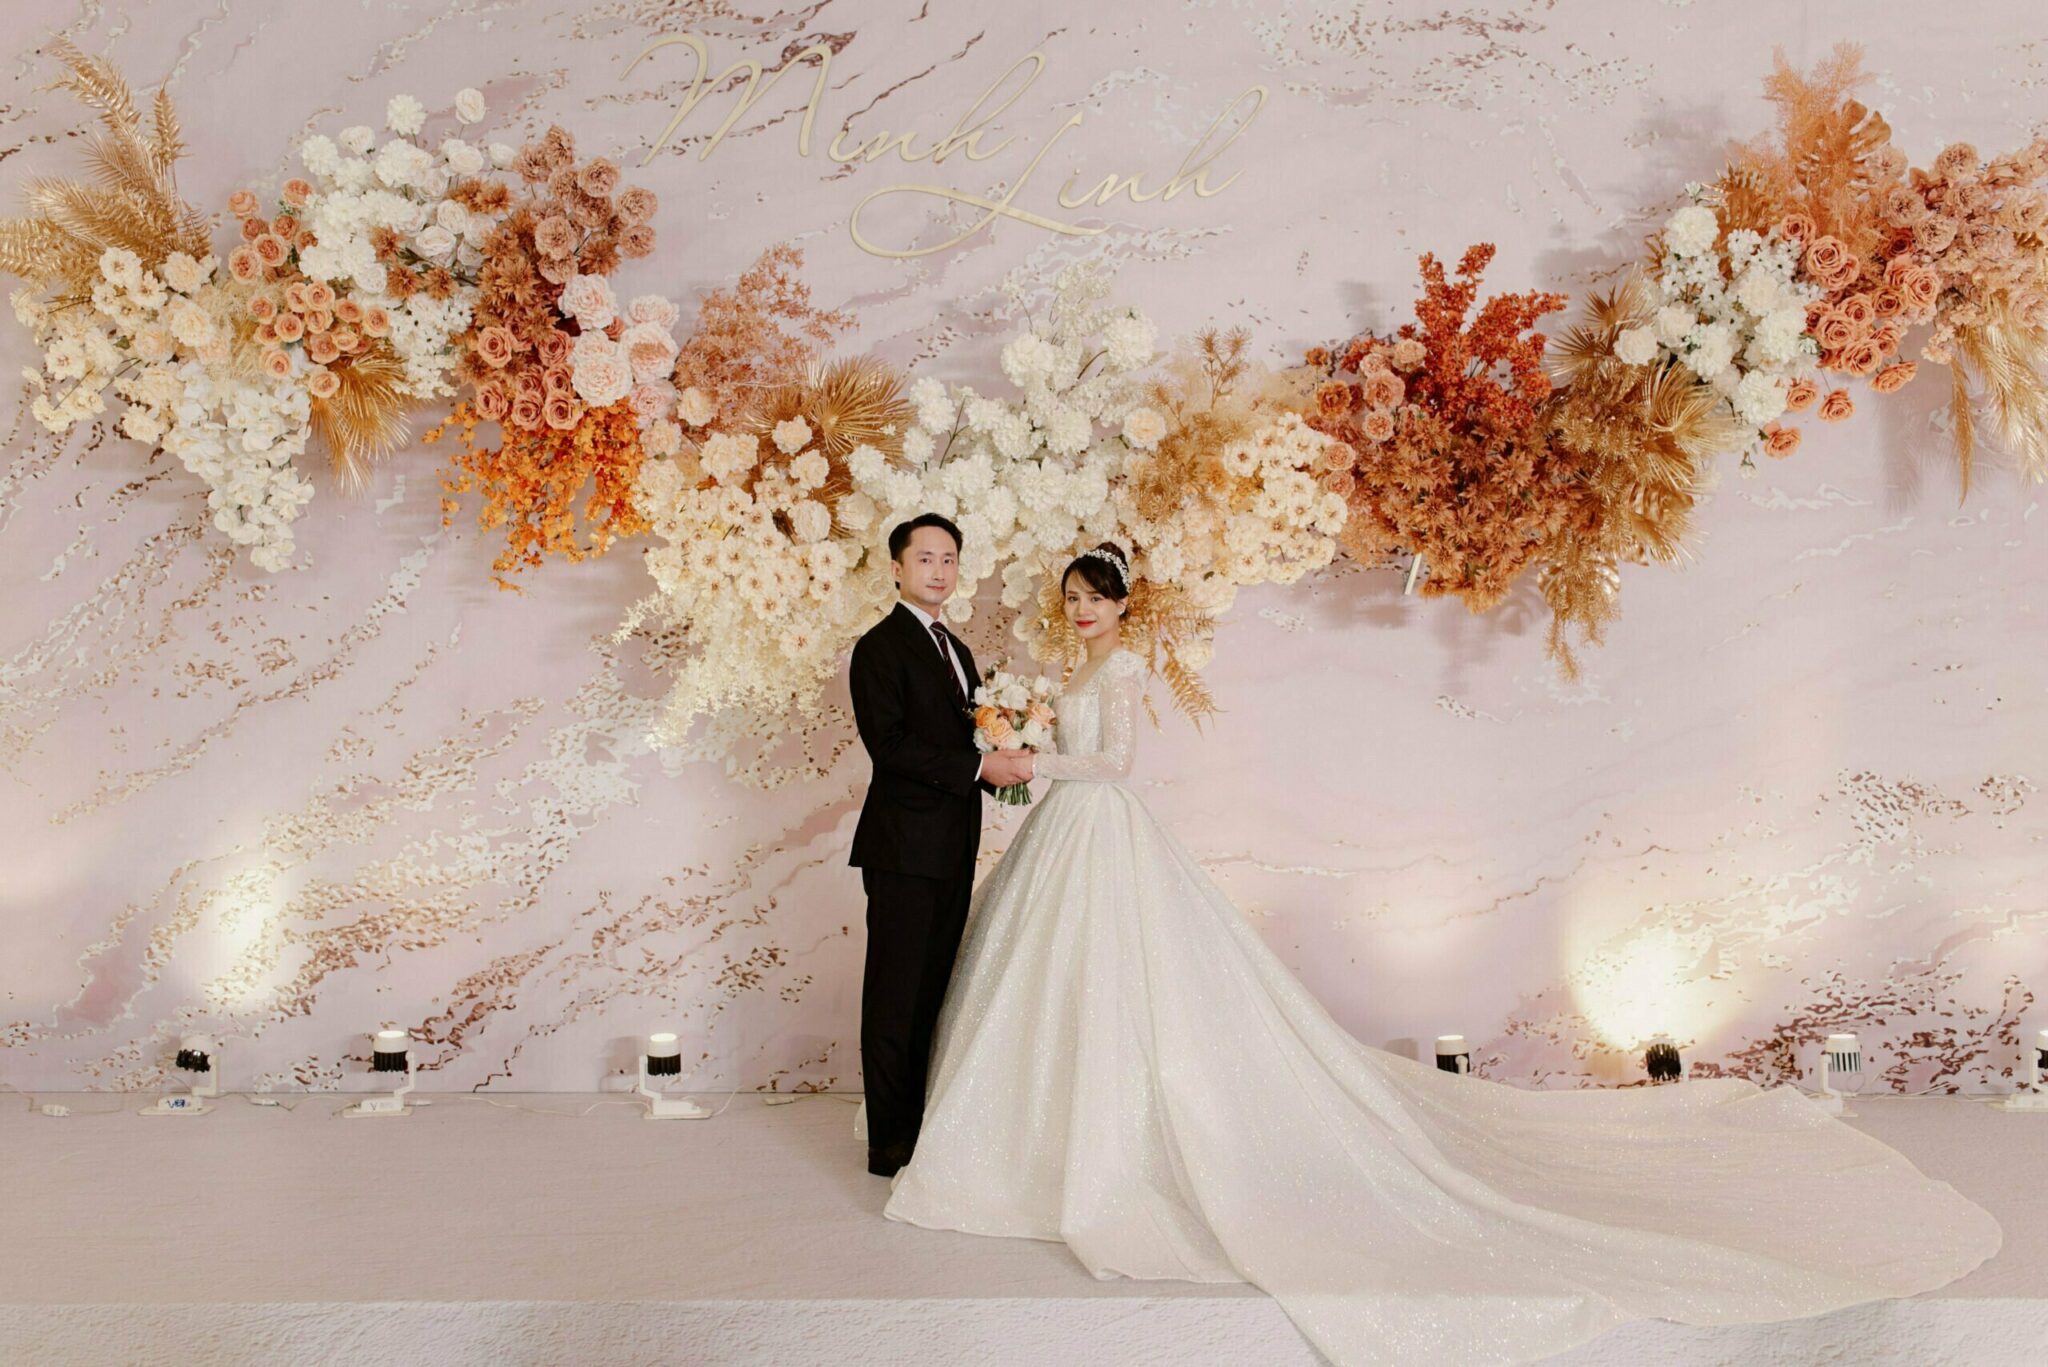 A vibrant ballroom wedding in Hanoi